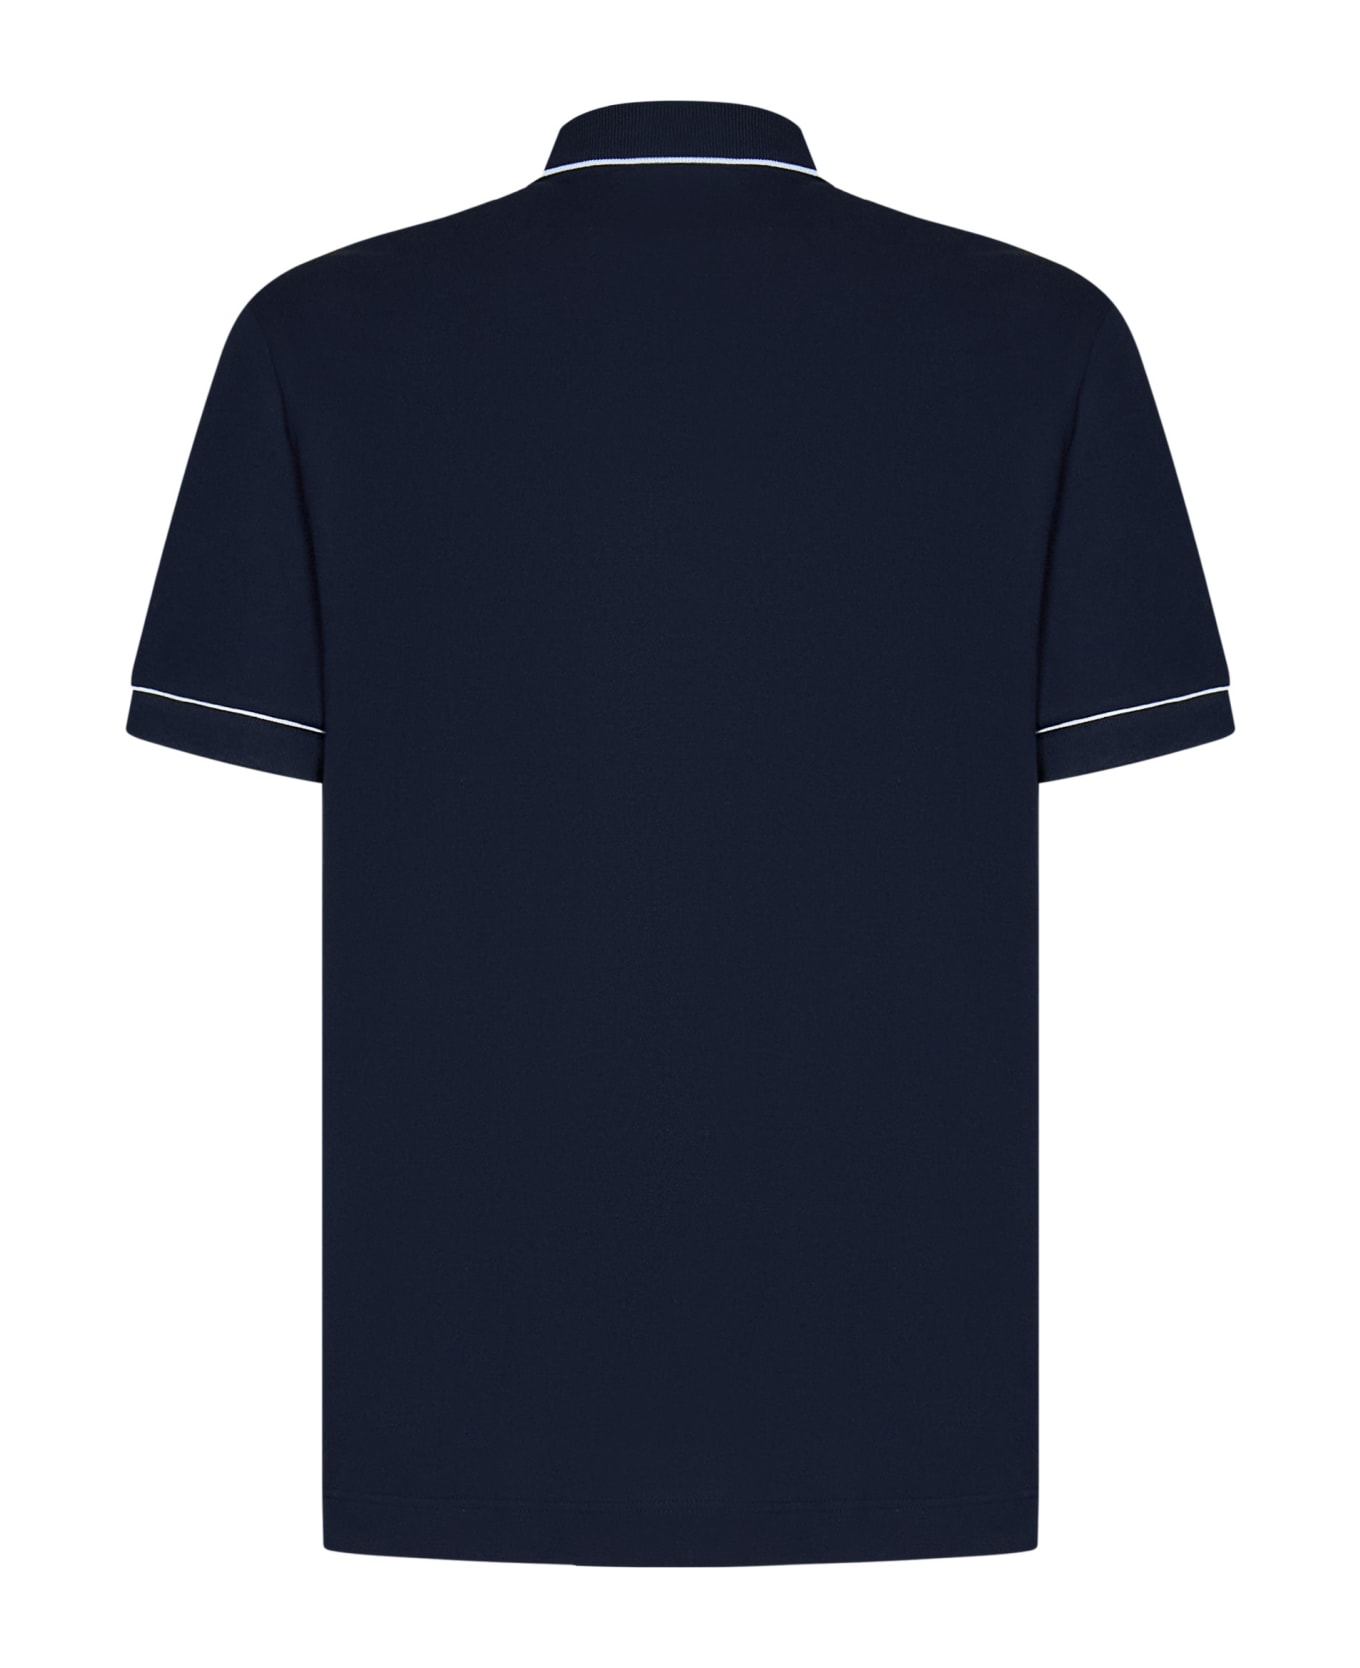 Lacoste Smart Paris Polo Shirt - Blue